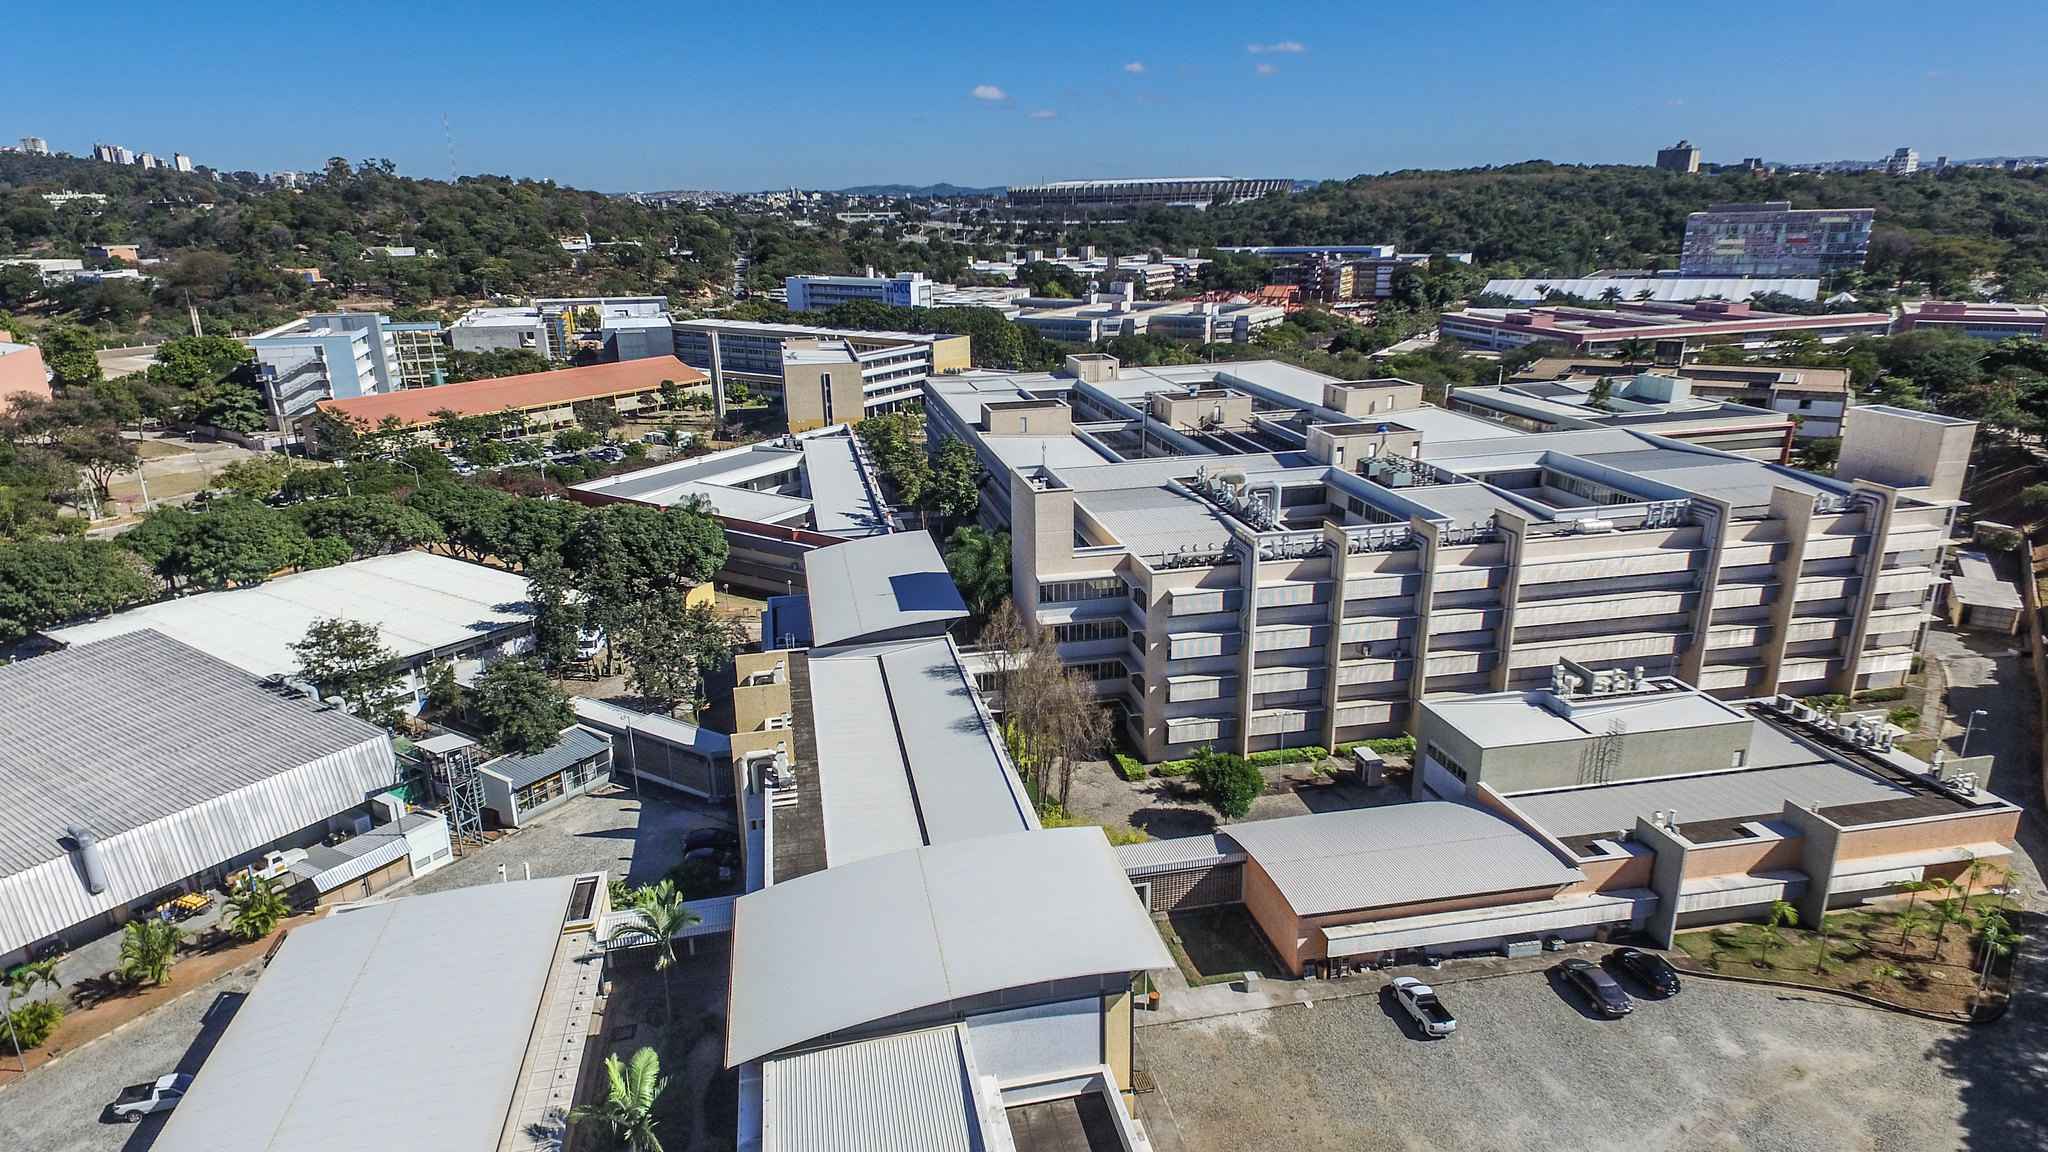 Vista aérea do campus Pampulha, que concentra a maioria das unidades acadêmicas da UFMG: aulas continuam em modo remoto